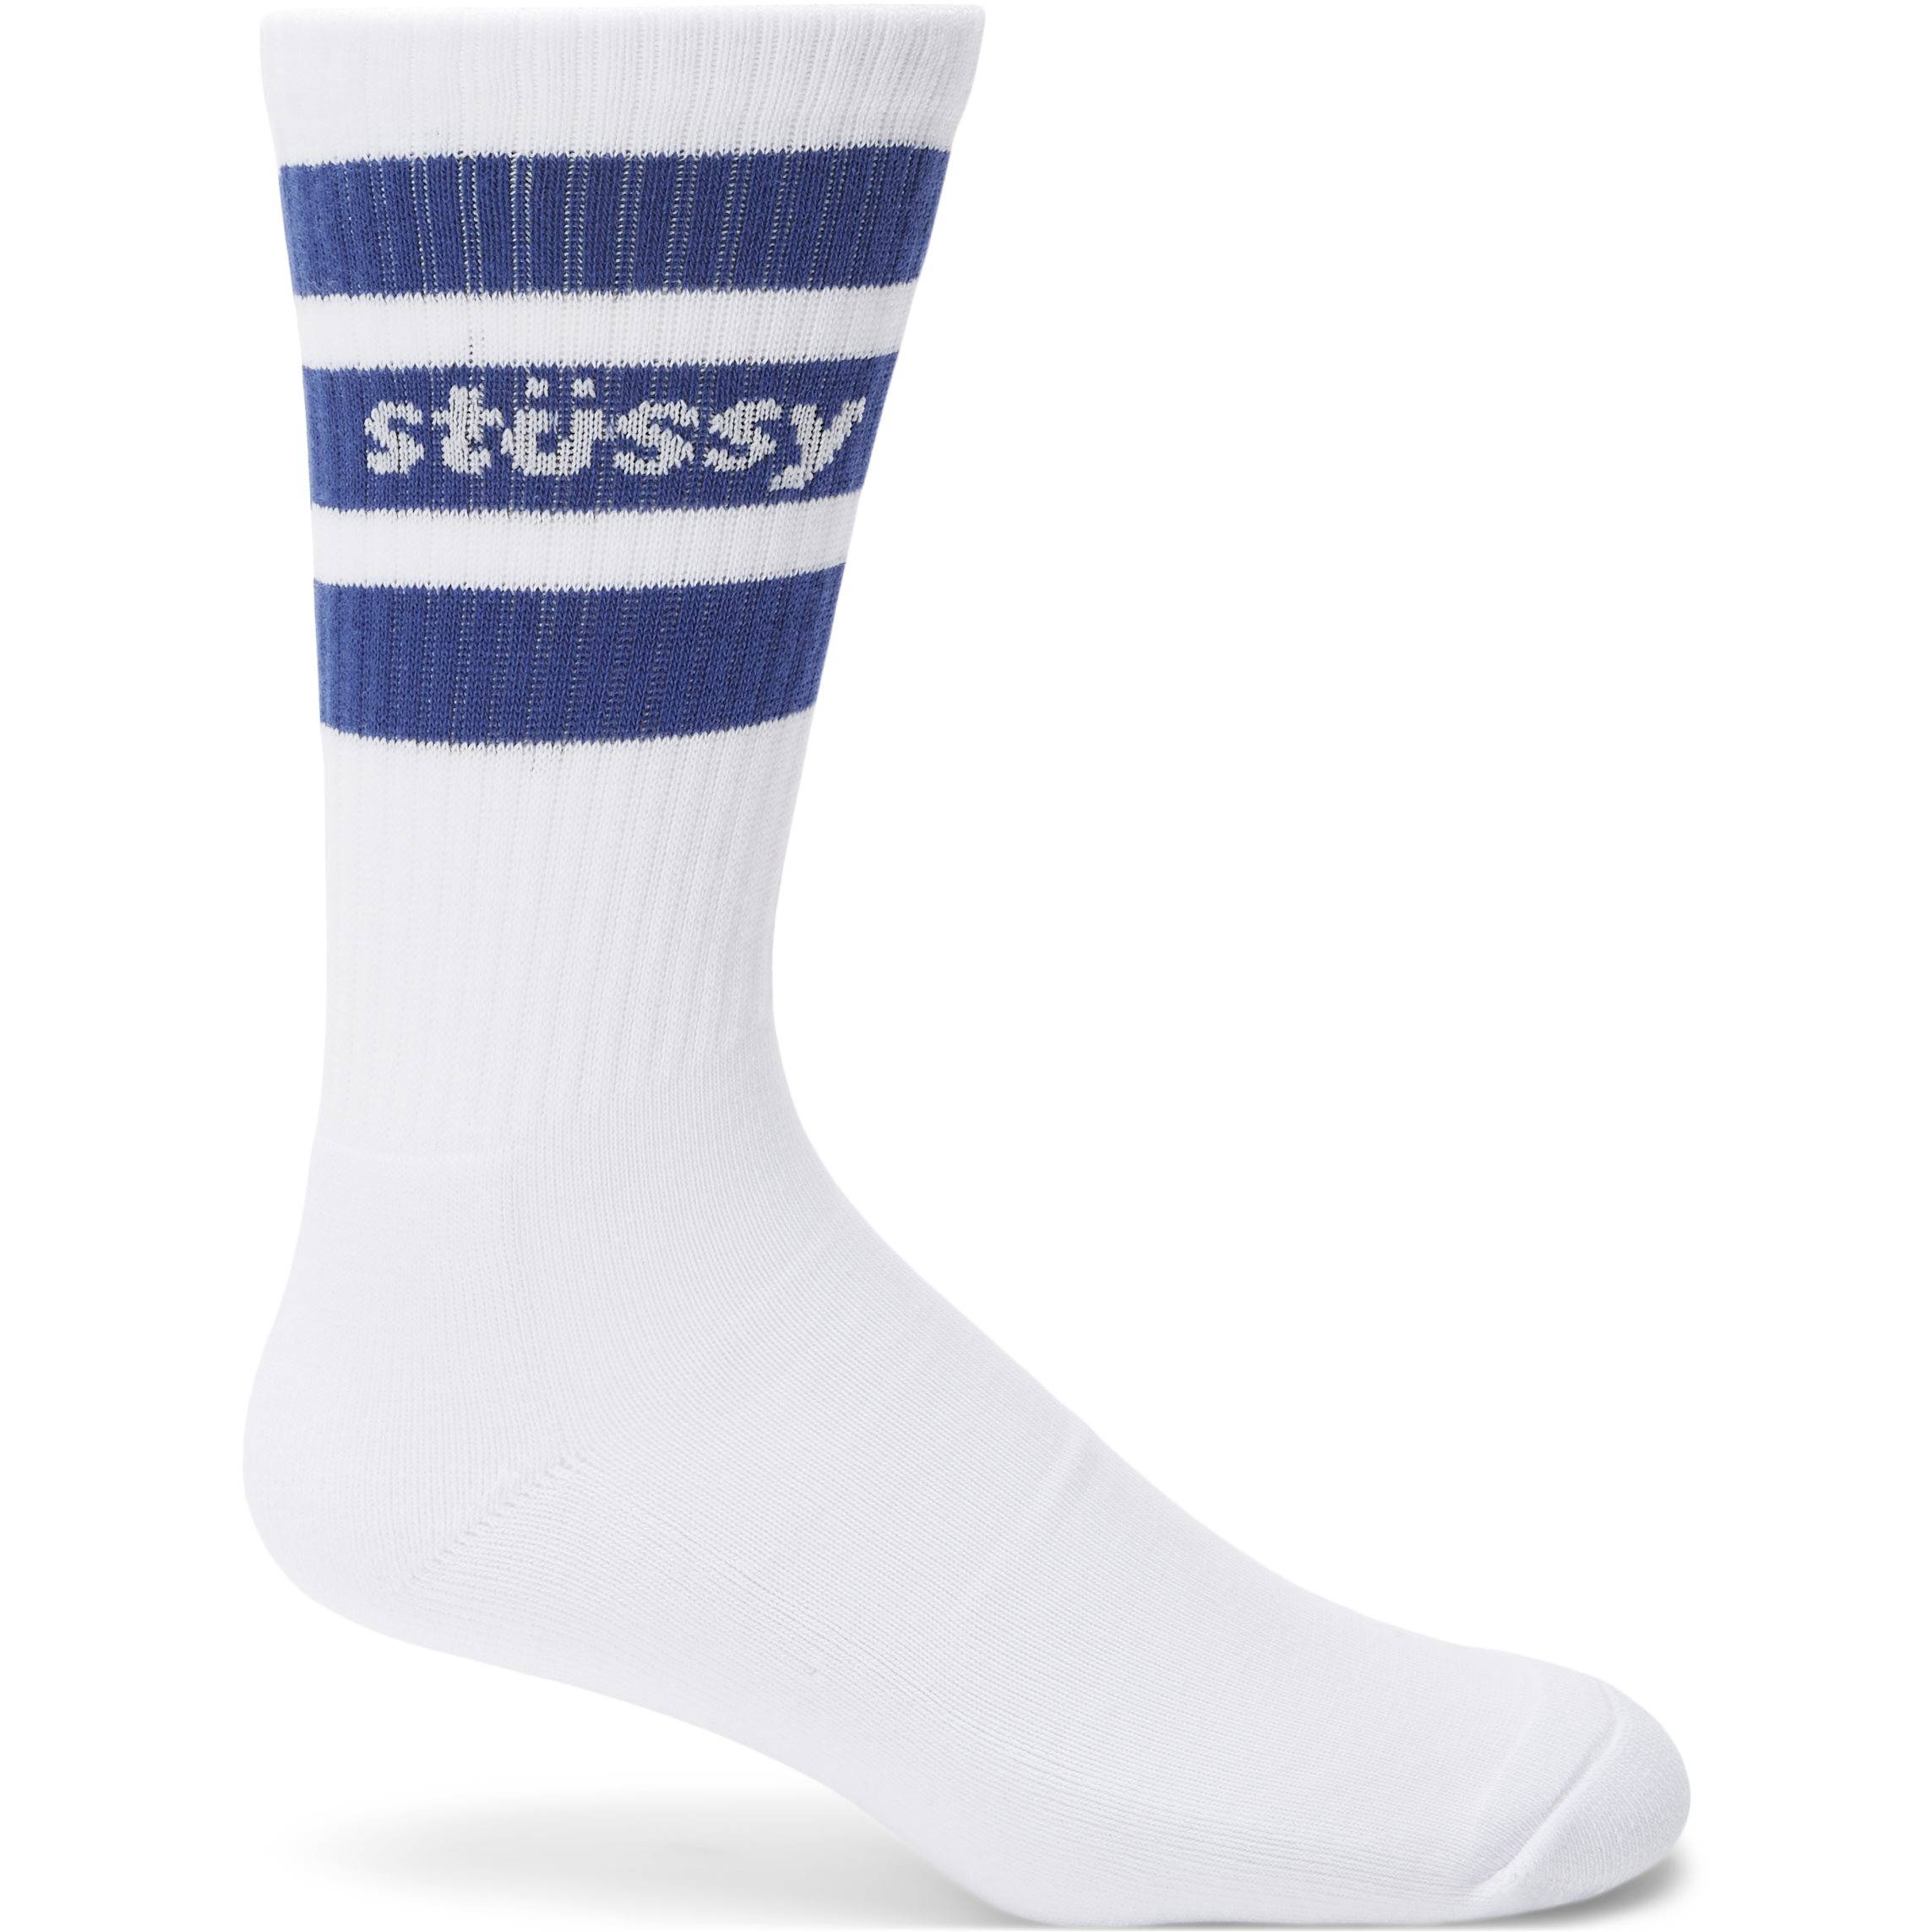 1-Pack Sports Crew Tennis Socks - Socks - White